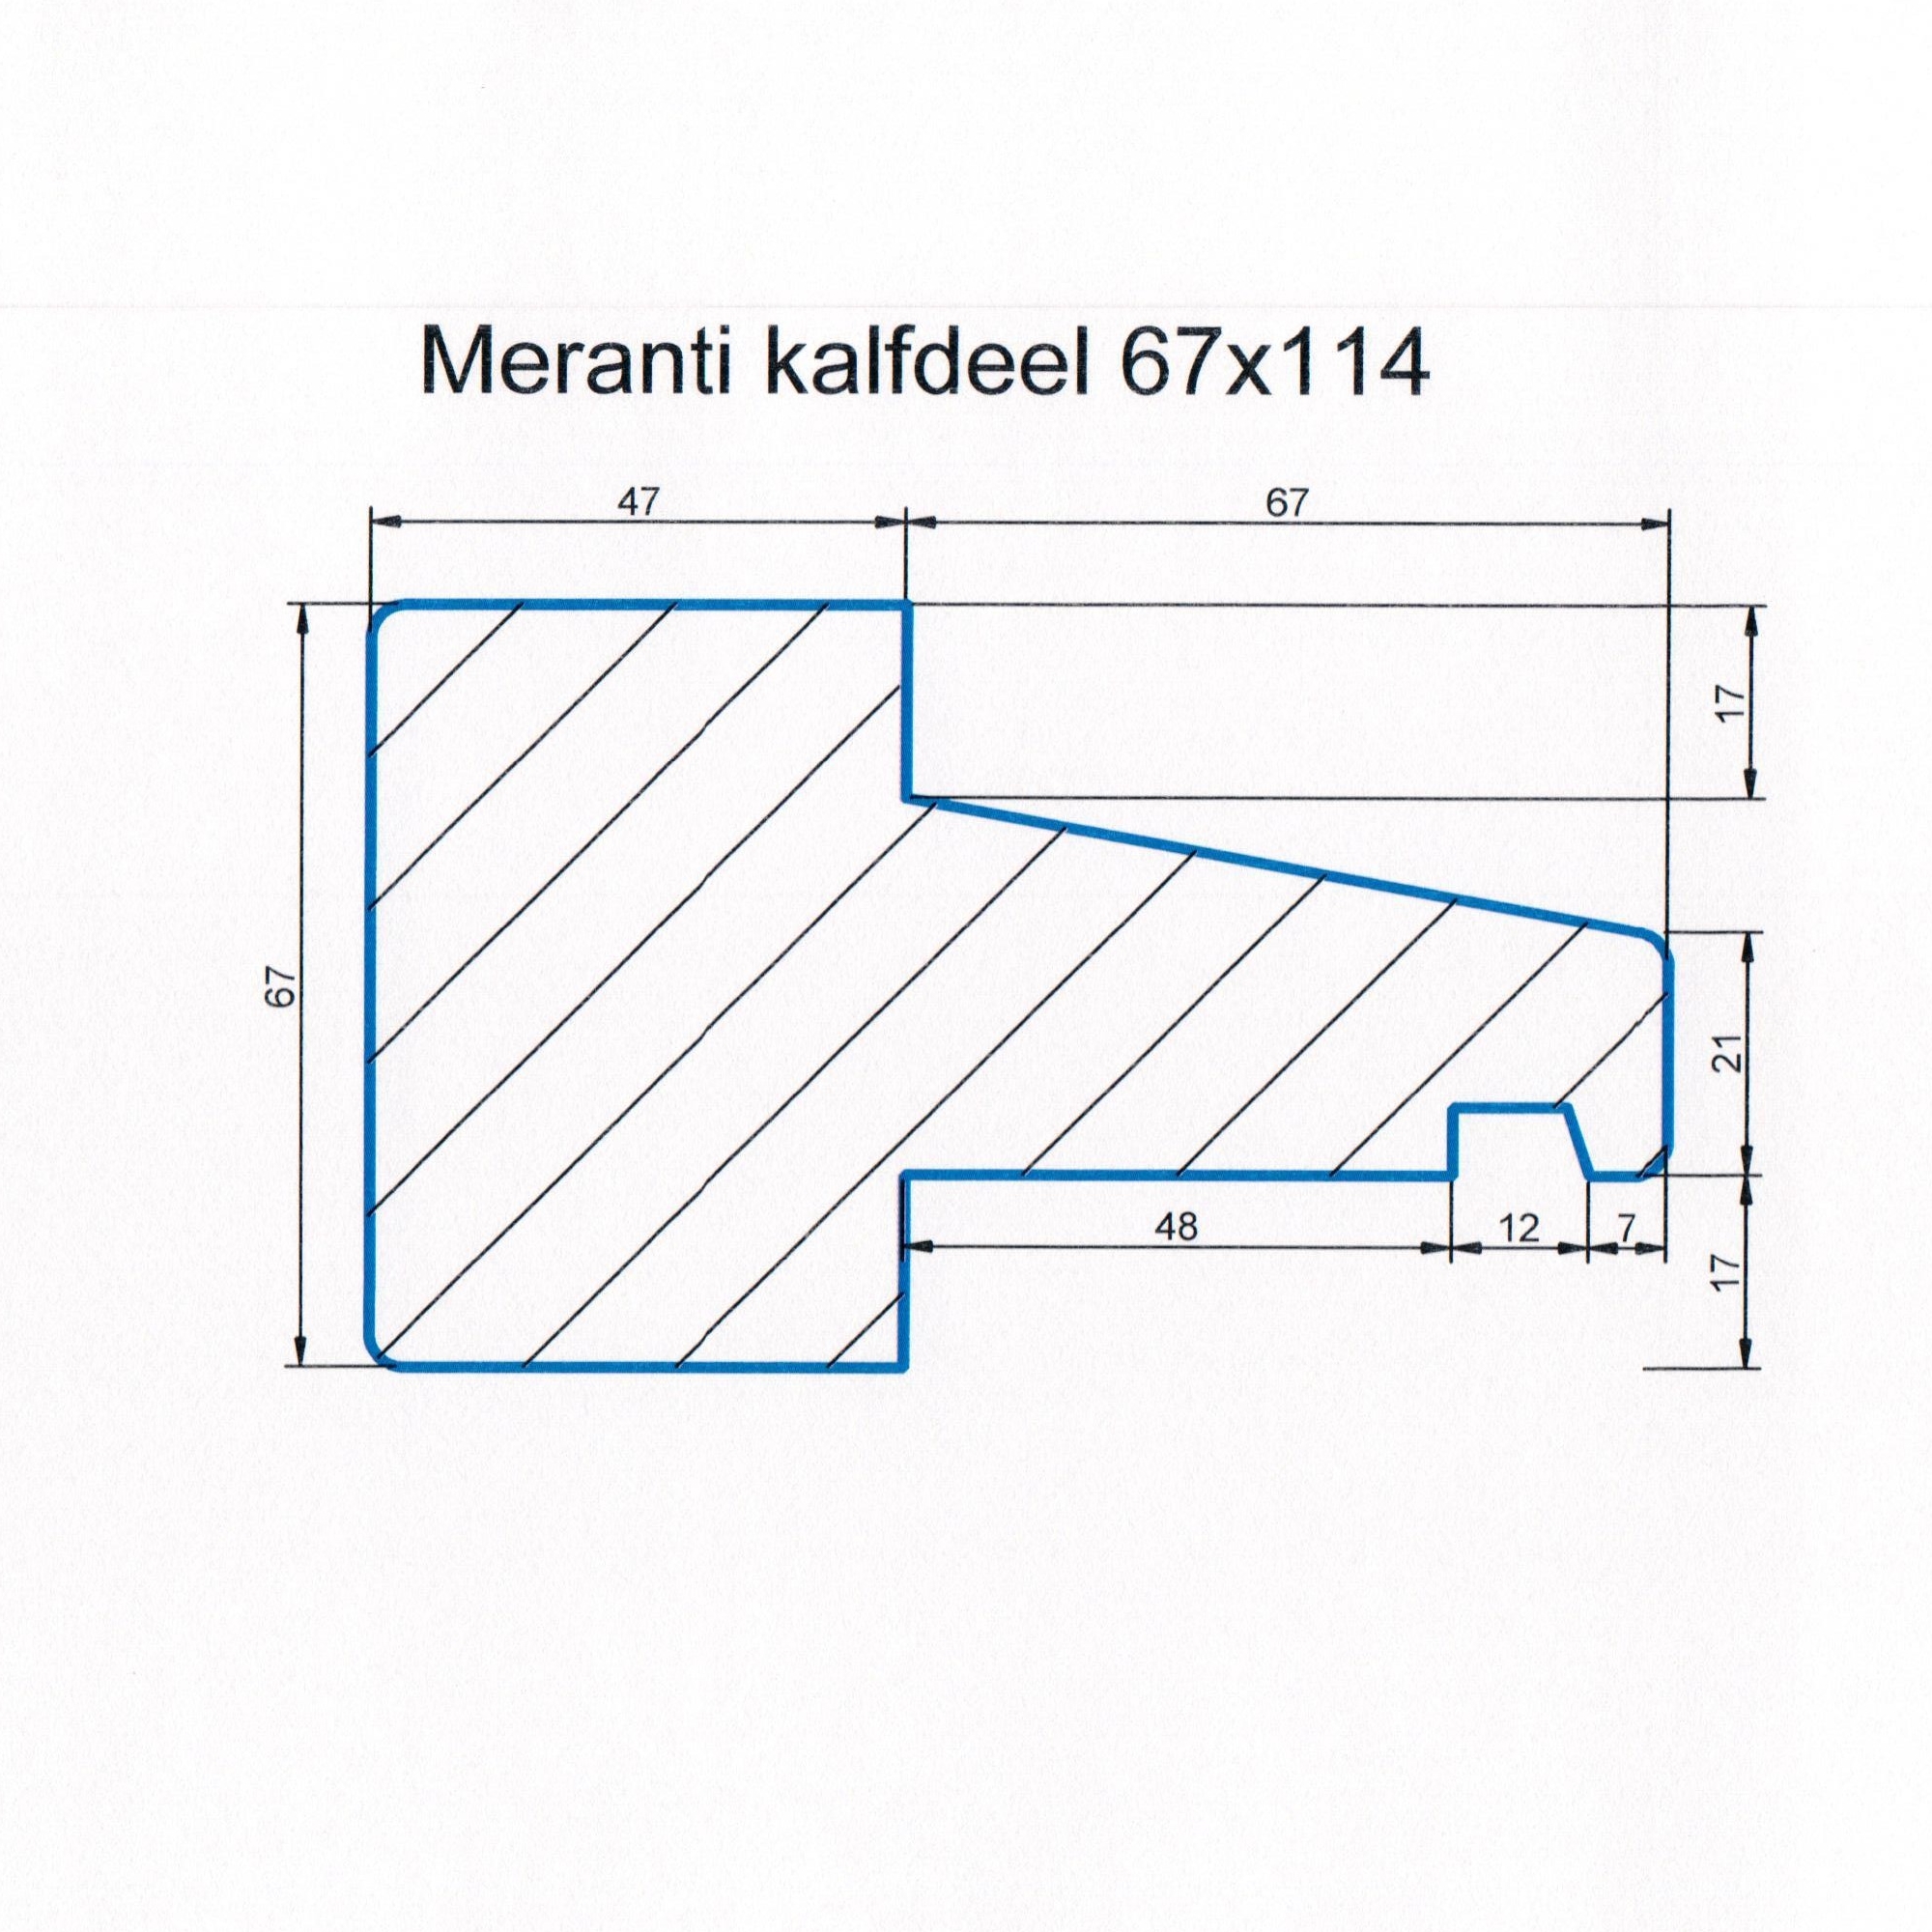 Meranti 67x114 kozijnhout kalfdeel L=4000 mm